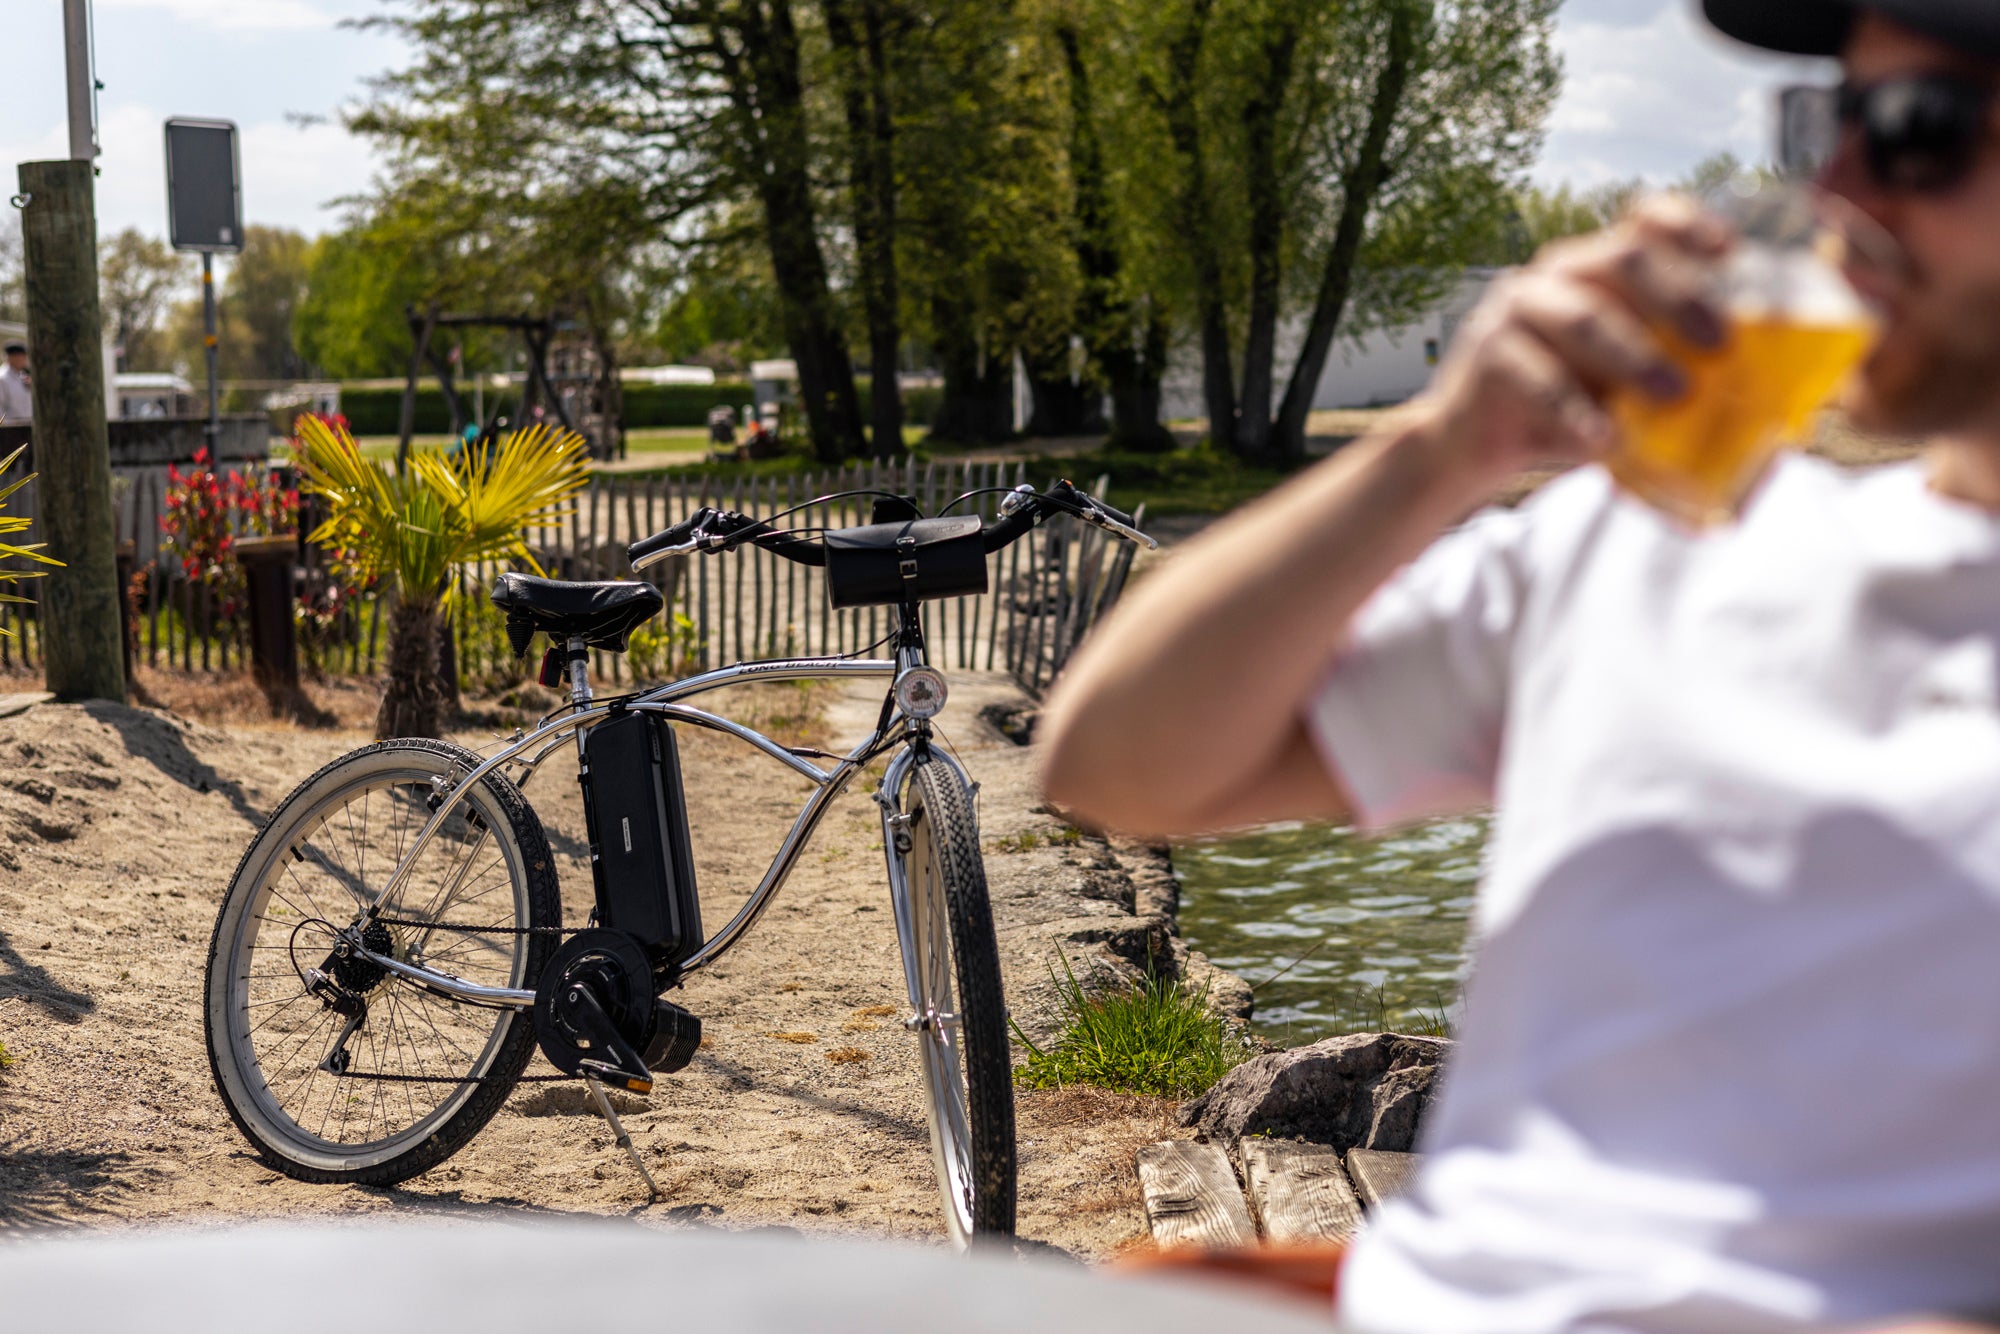 Homme dégustant une bière sur la plage, avec un vélo de plage de couleur sable amélioré par un kit de conversion de vélo électrique RocketBike X1 Photon, en arrière-plan - solution de cyclisme durable et économique.